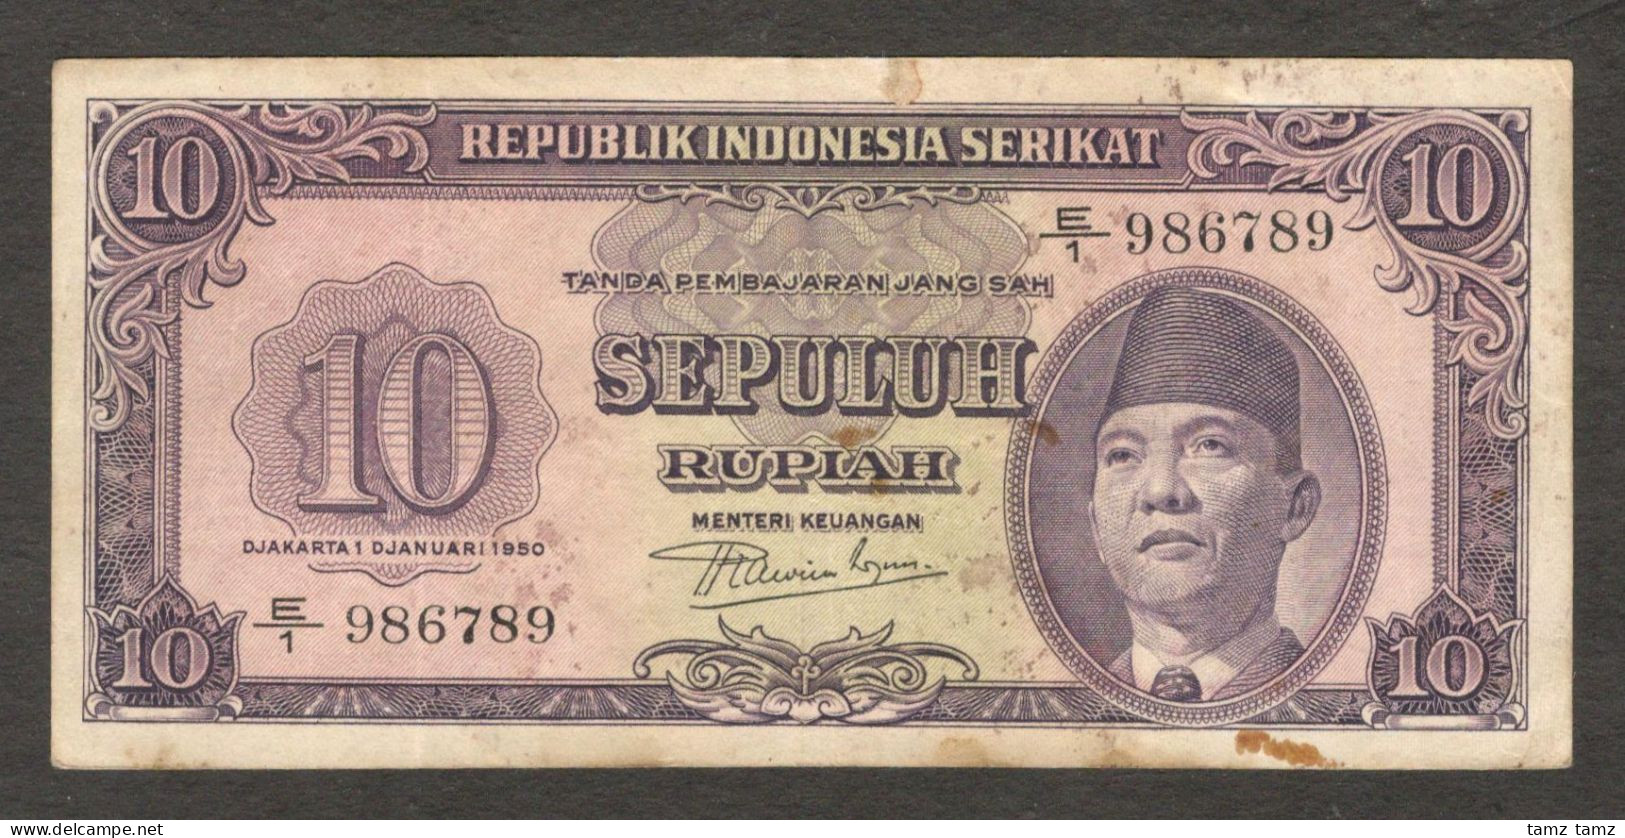 Republik Indonesia Serikat 10 Rupiah President Soekarno P-37 1950 VF - Indonesia